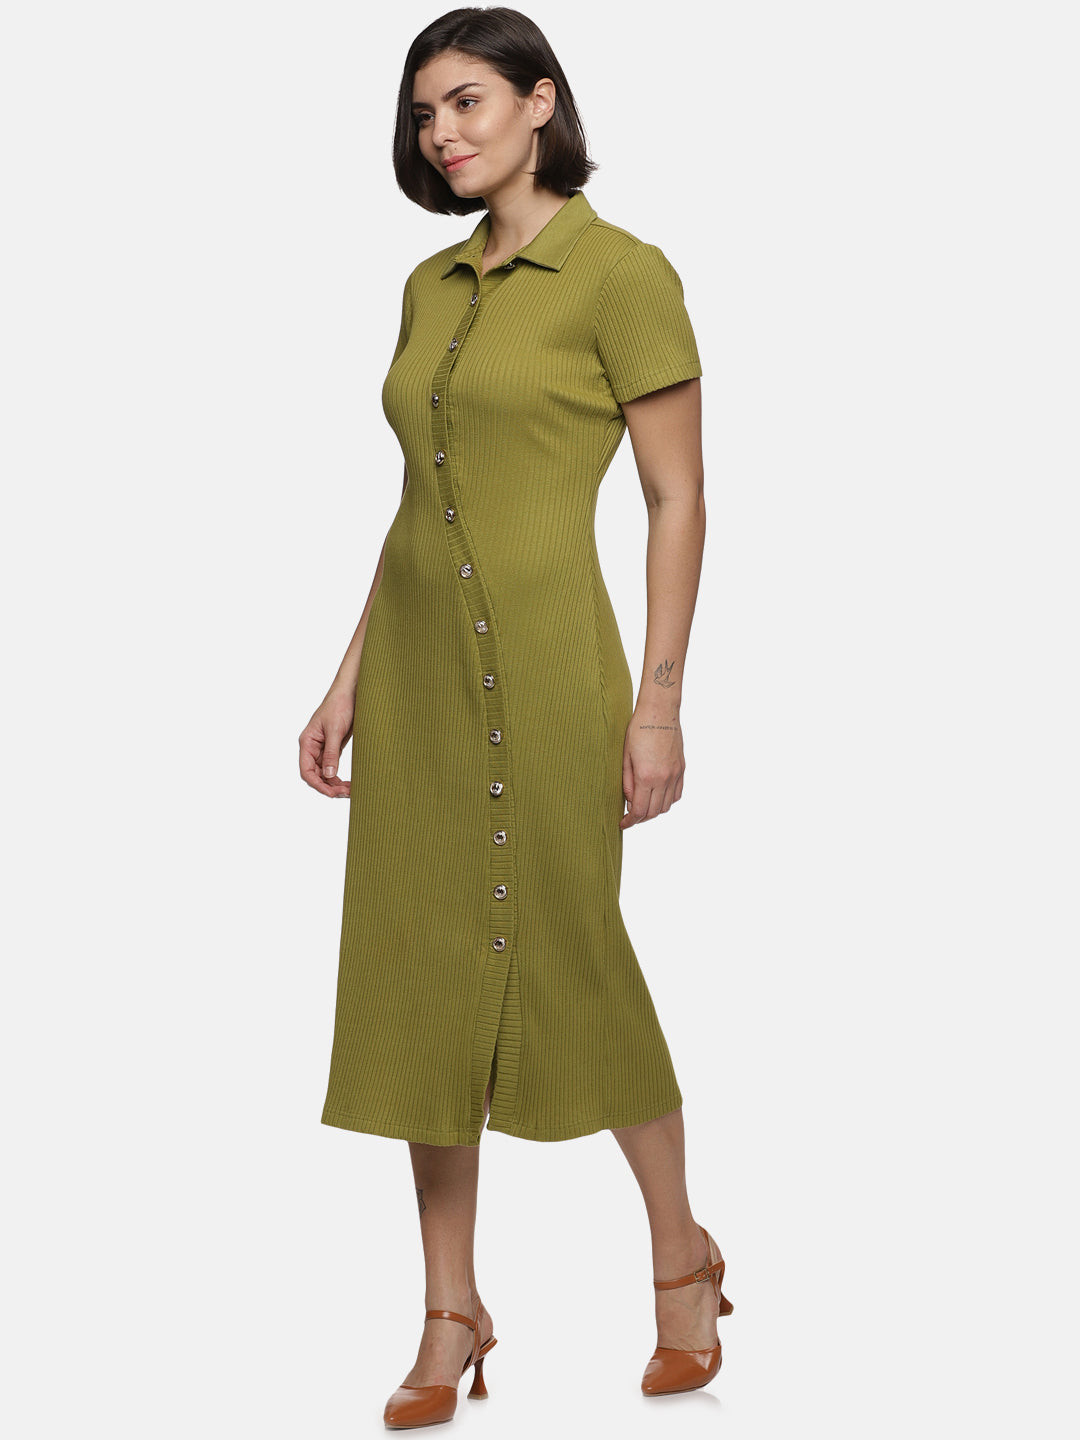 IS.U Olive Buttondown Knit Dress